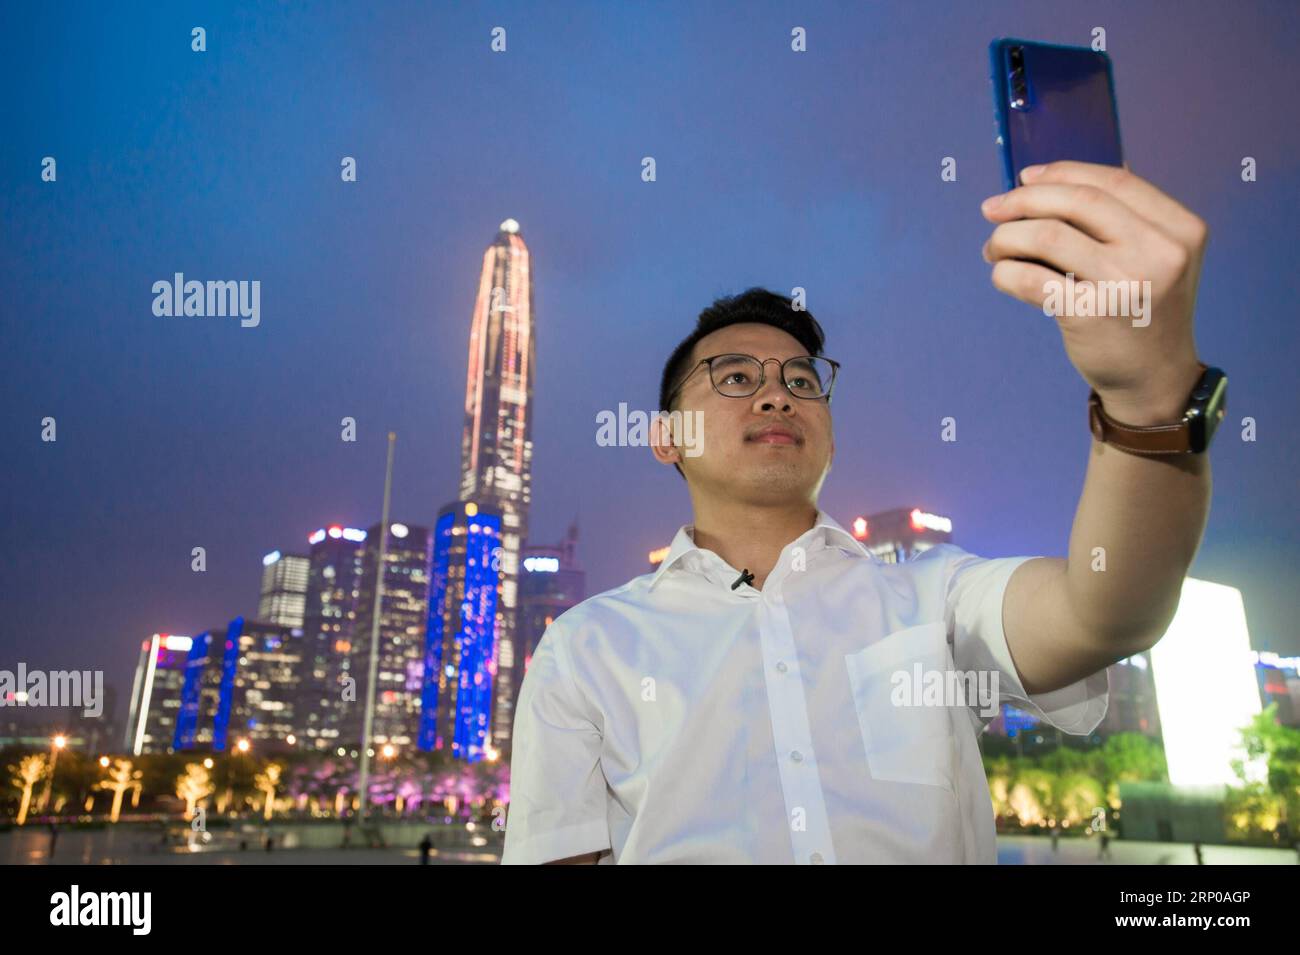 (180430) -- SHENZHEN, 30 avril 2018 -- le décorateur d'intérieur Huang Songyuan prend un selfie avec des gratte-ciel à Shenzhen, dans la province du Guangdong du sud de la Chine, le 27 avril 2018. En quatre décennies, depuis que la Chine a entrepris la réforme et la politique d'ouverture, Shenzhen s'est transformée d'une petite ville agricole en une métropole moderne en plein essor. En tant que première zone économique spéciale de la Chine, la ville a réussi à réaliser des progrès en matière de développement car elle se développe rapidement à l avant-poste de la réforme économique du pays. Aujourd'hui s Shenzhen est à première main une ville de merveilles architecturales et d'ingénierie. Derrière ses s ascendants Banque D'Images